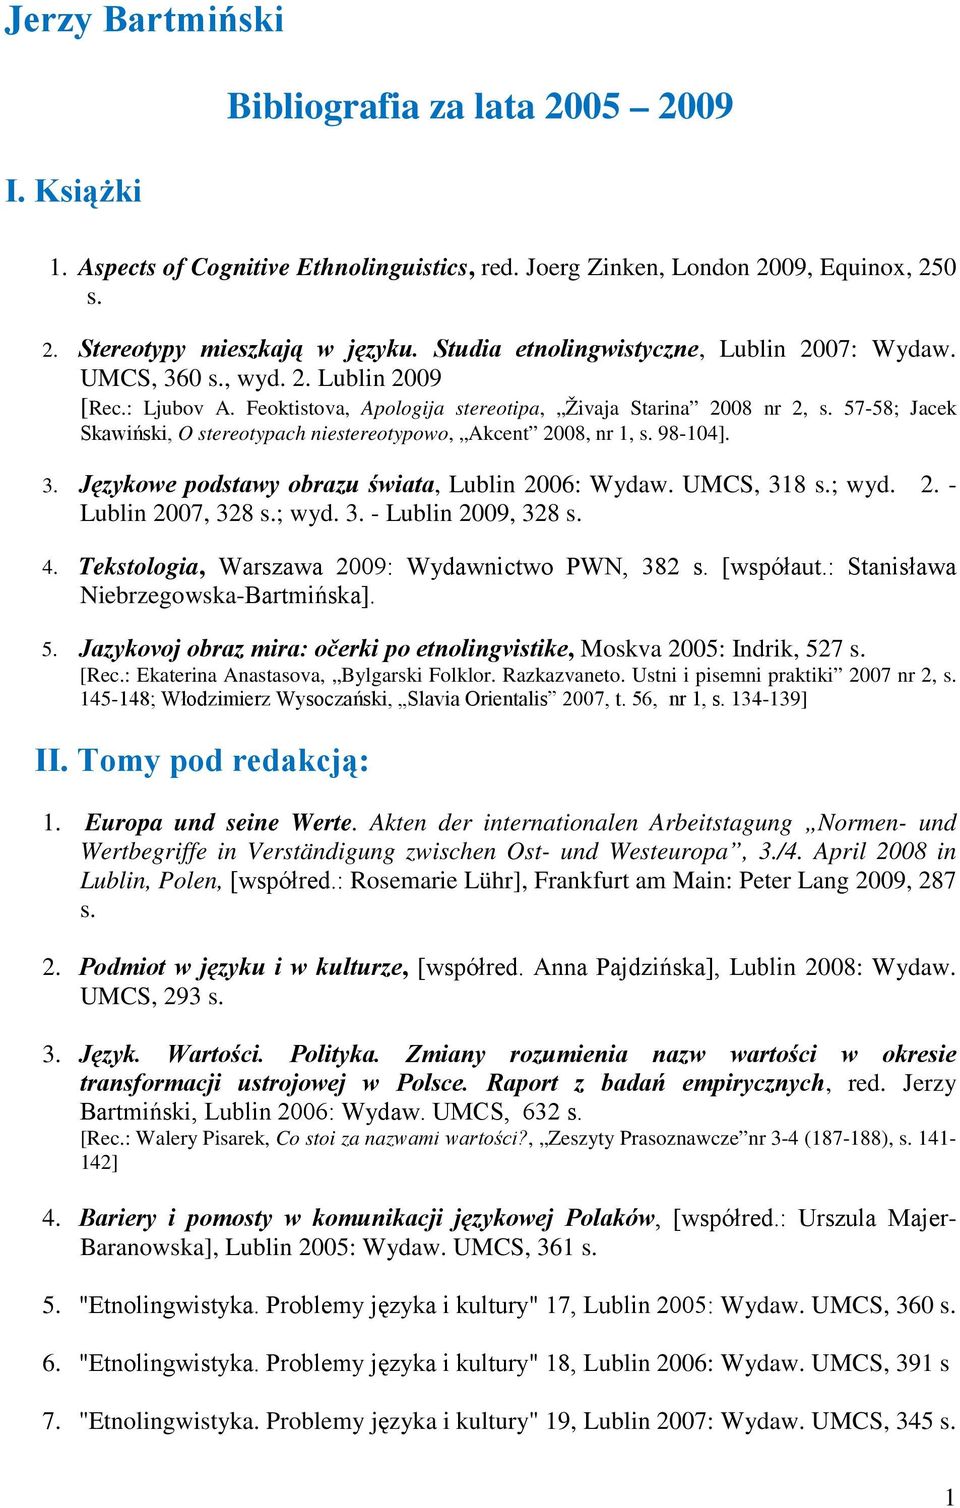 57-58; Jacek Skawiński, O stereotypach niestereotypowo, Akcent 2008, nr 1, s. 98-104]. 3. Językowe podstawy obrazu świata, Lublin 2006: Wydaw. UMCS, 318 s.; wyd. 2. - Lublin 2007, 328 s.; wyd. 3. - Lublin 2009, 328 s.